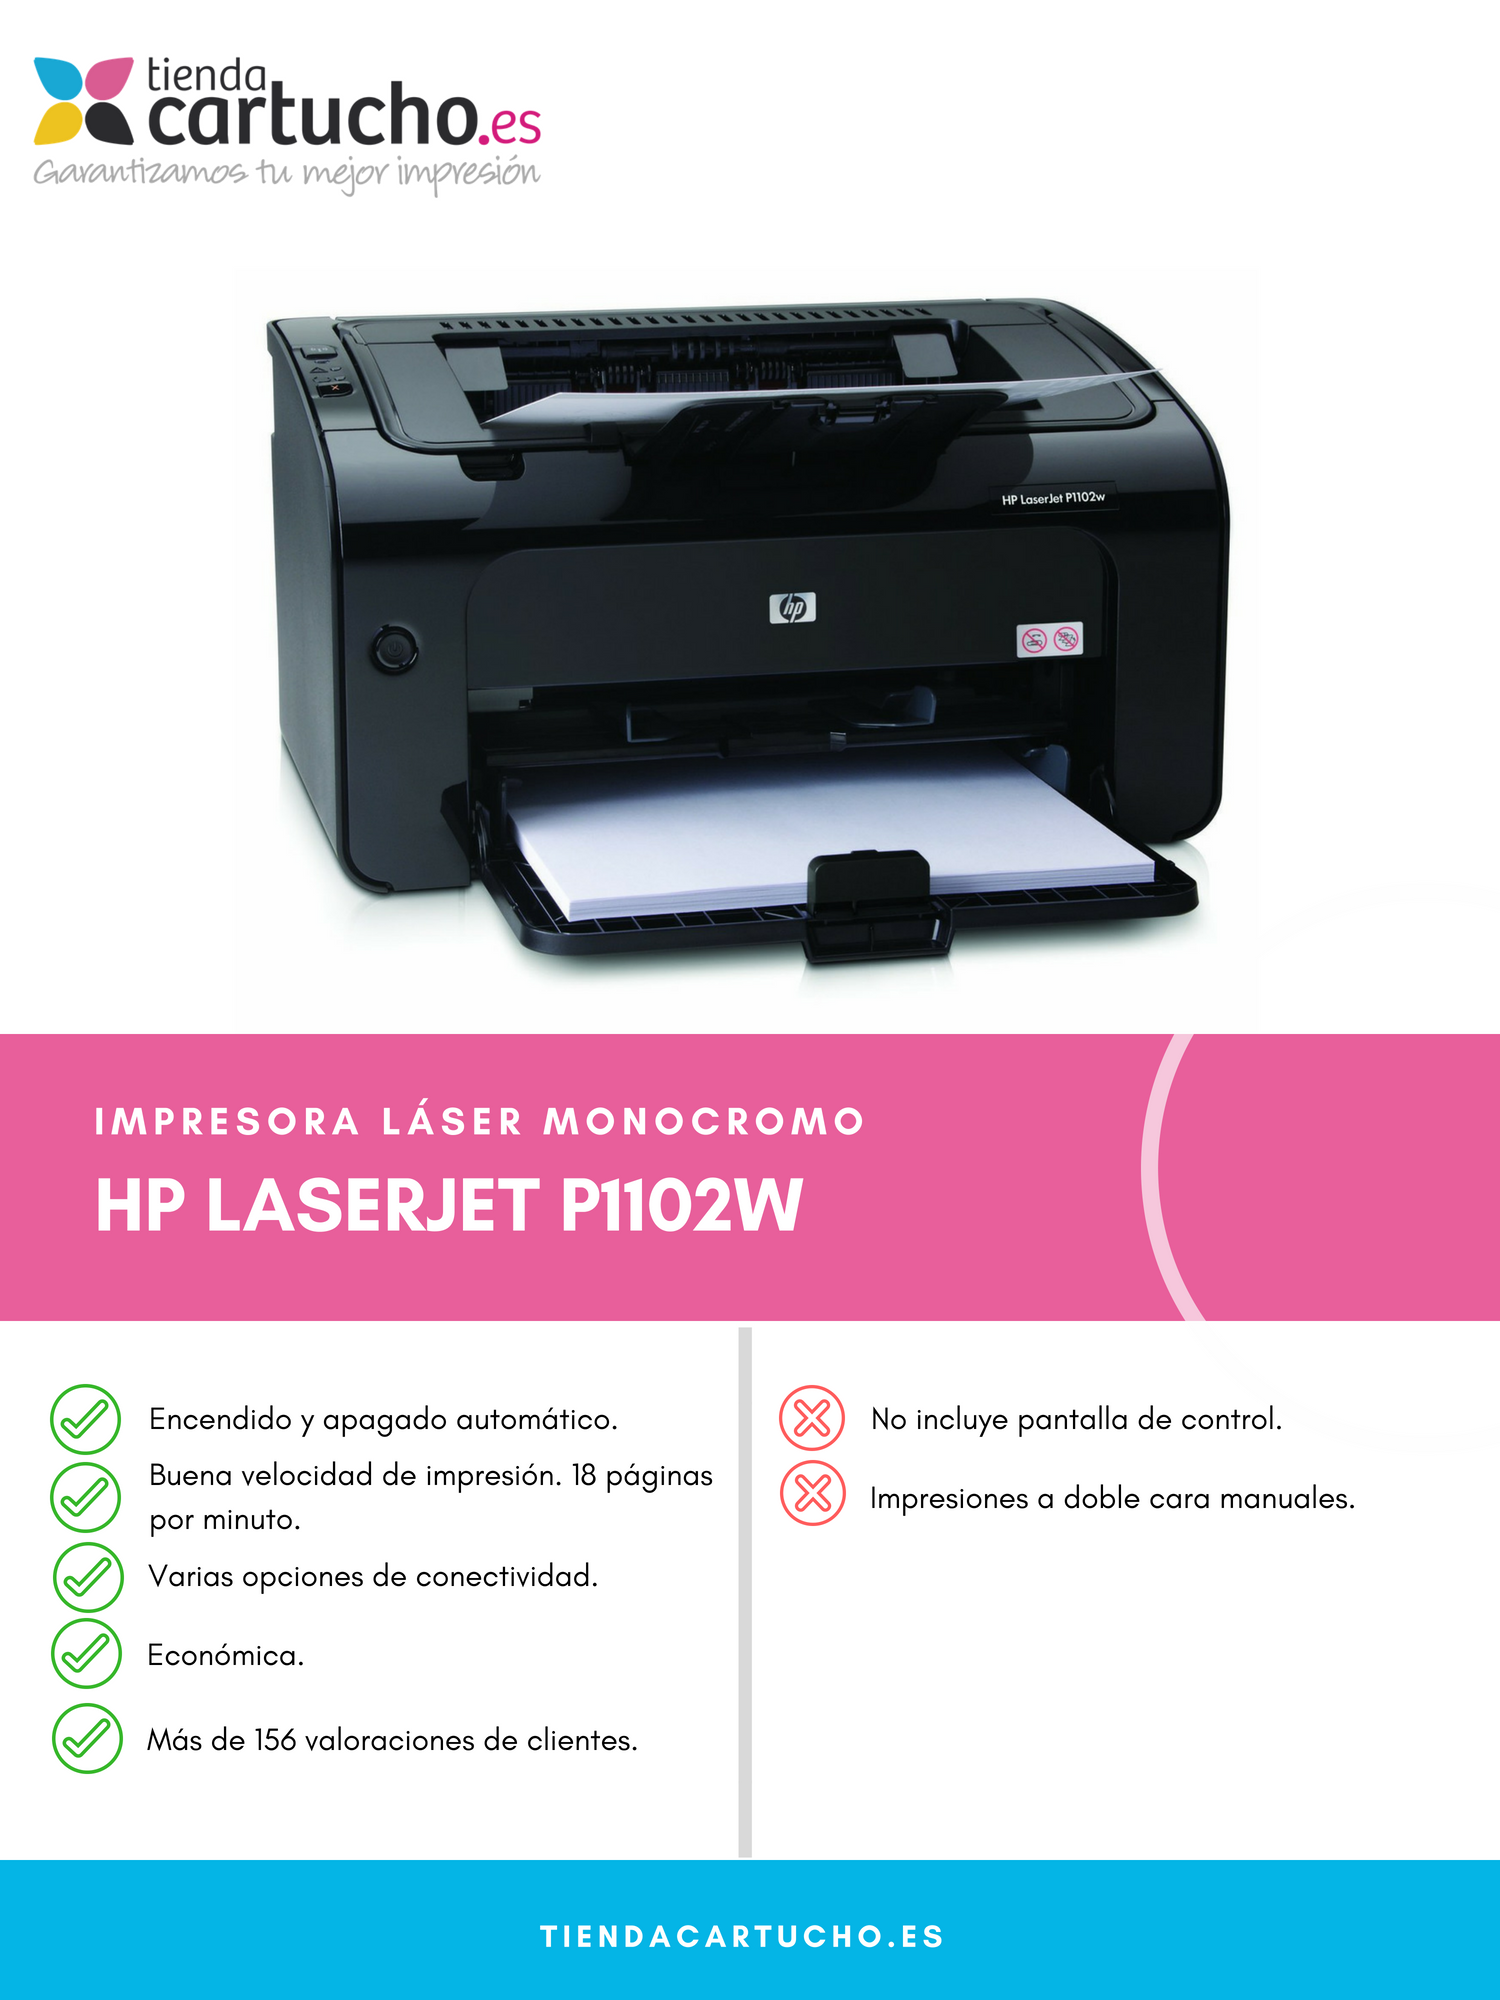 HP LaserJet P1102w | ¿La Compro en